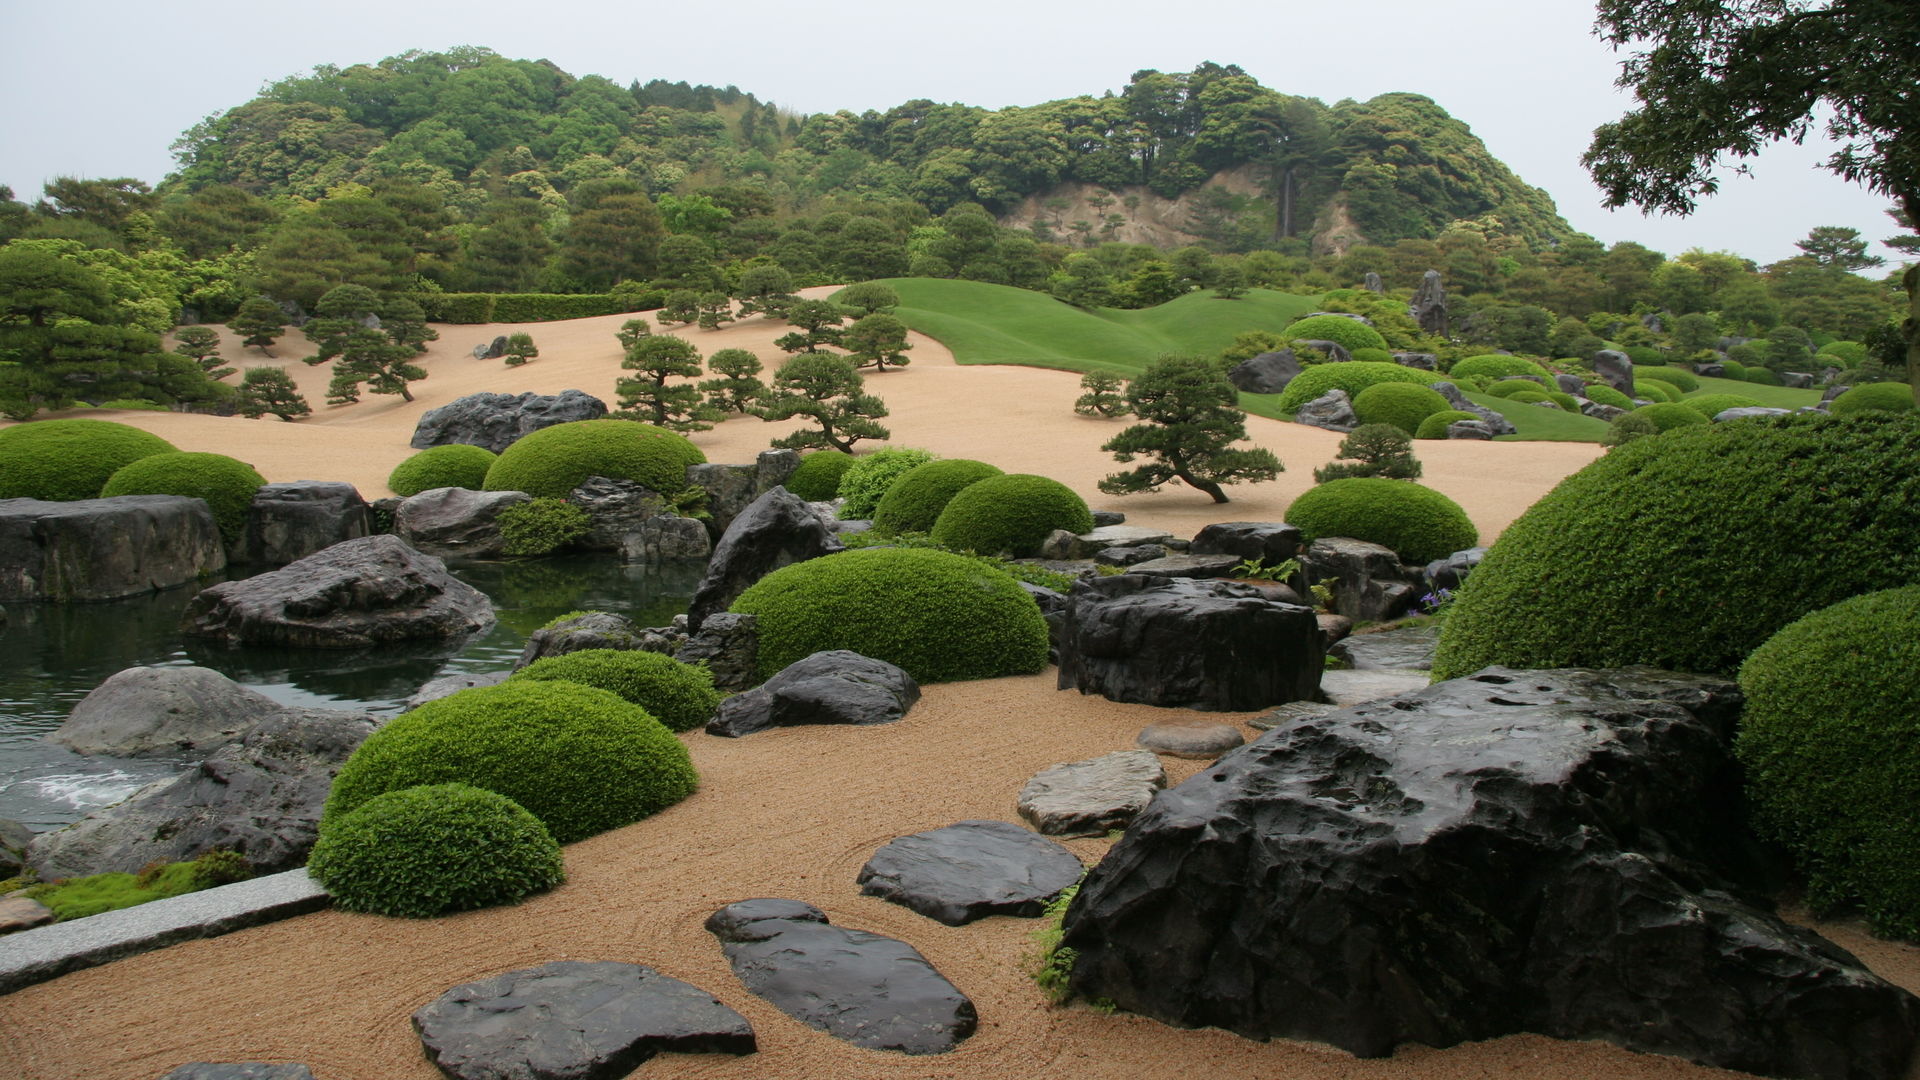 島根 足立美術館の日本庭園 島根県 について詳しく見る Find 47